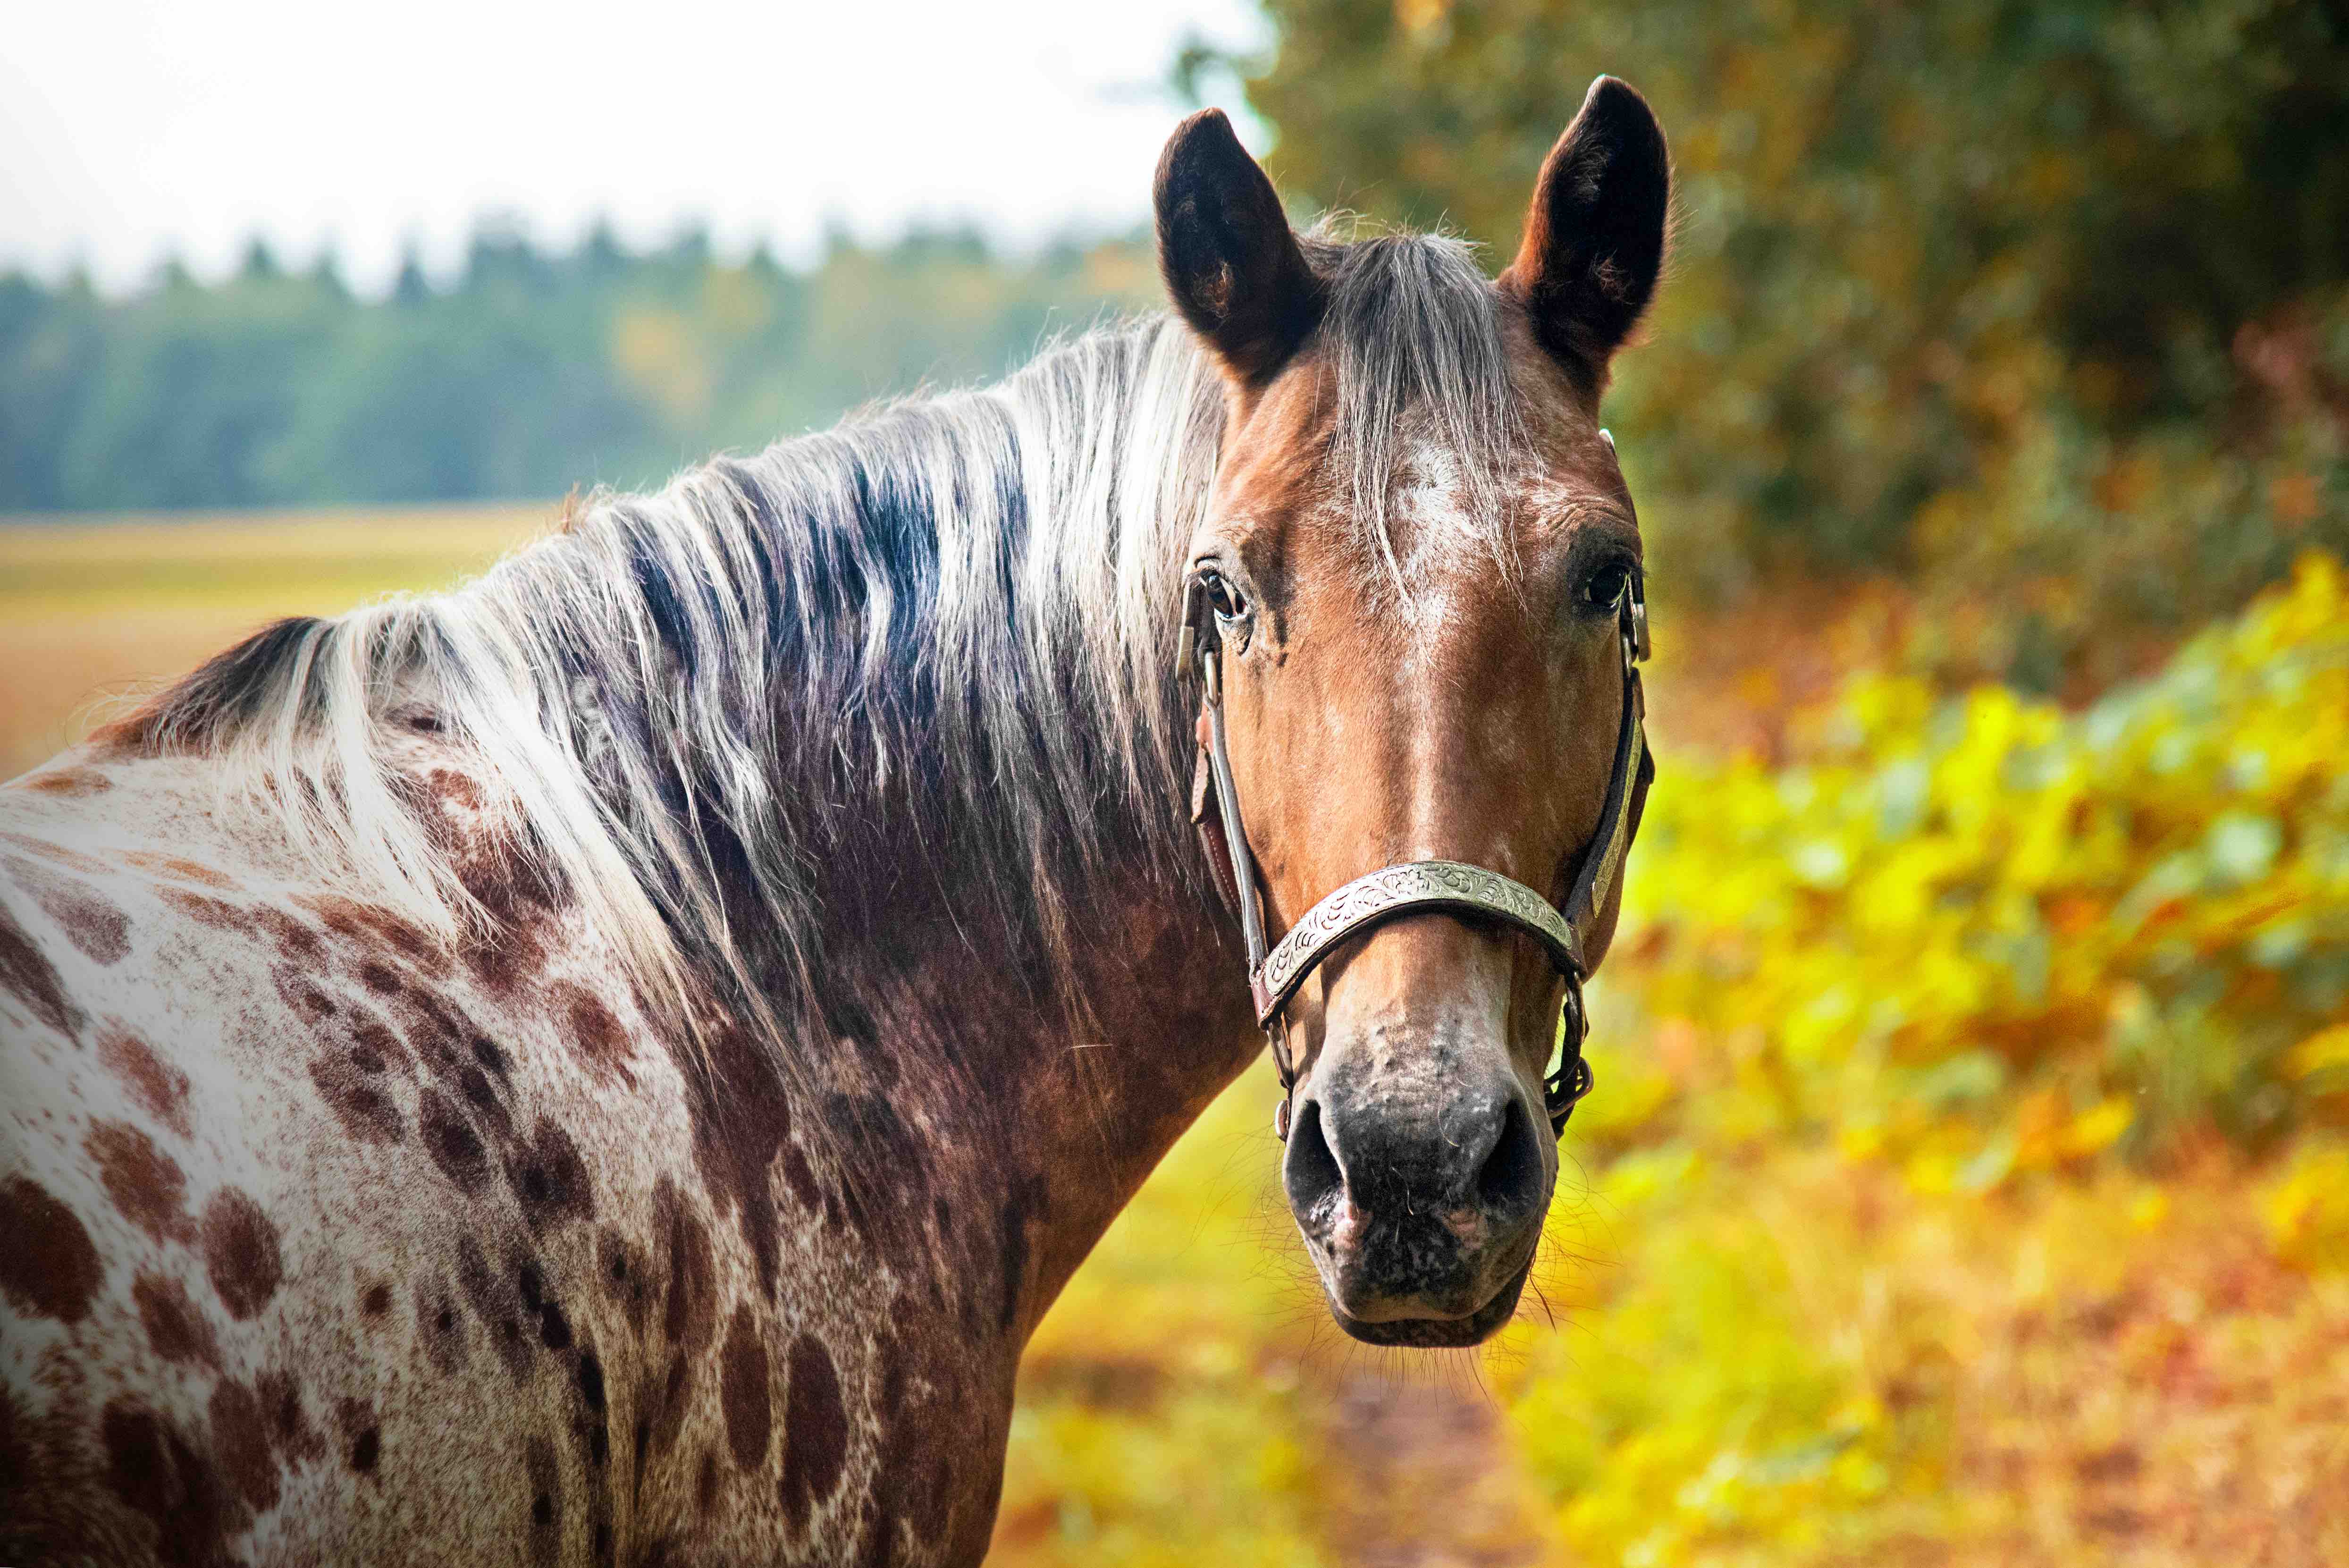 Amazing Horse - Appaloosa Horses 